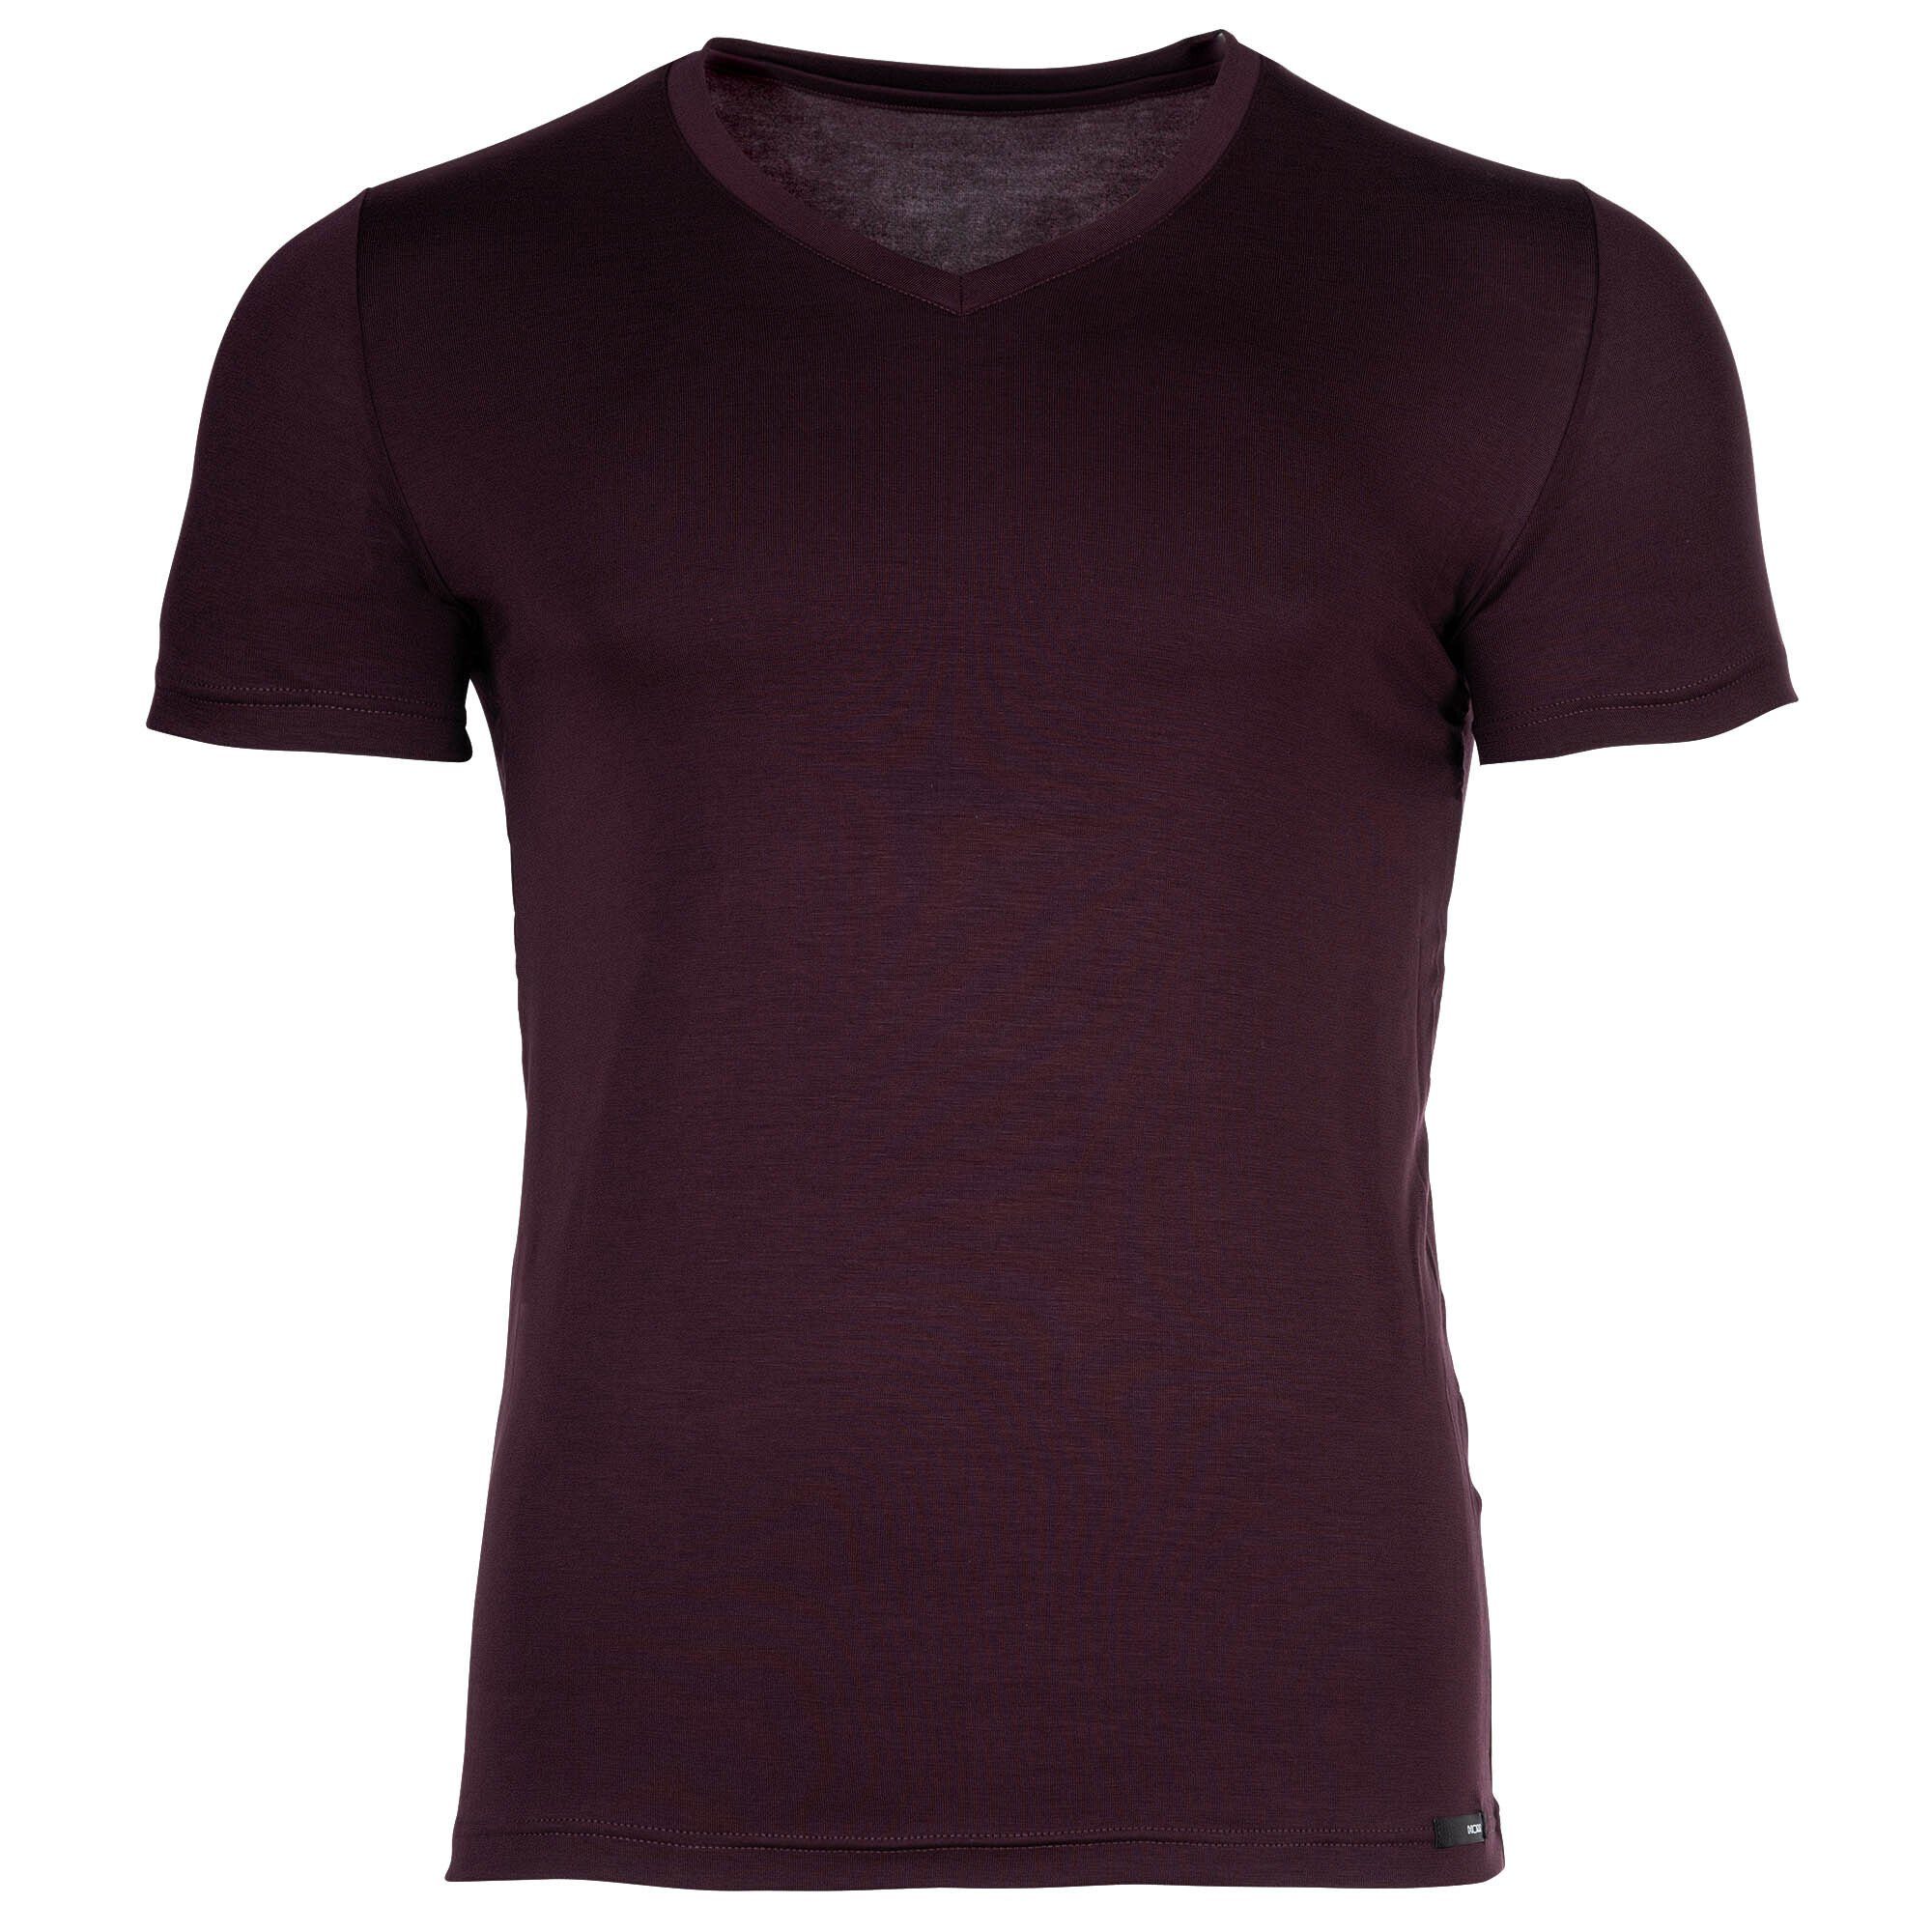 Hom soft T-Shirt Herren Bordeaux Lyocell V Neck Tee-Shirt T-Shirt V -